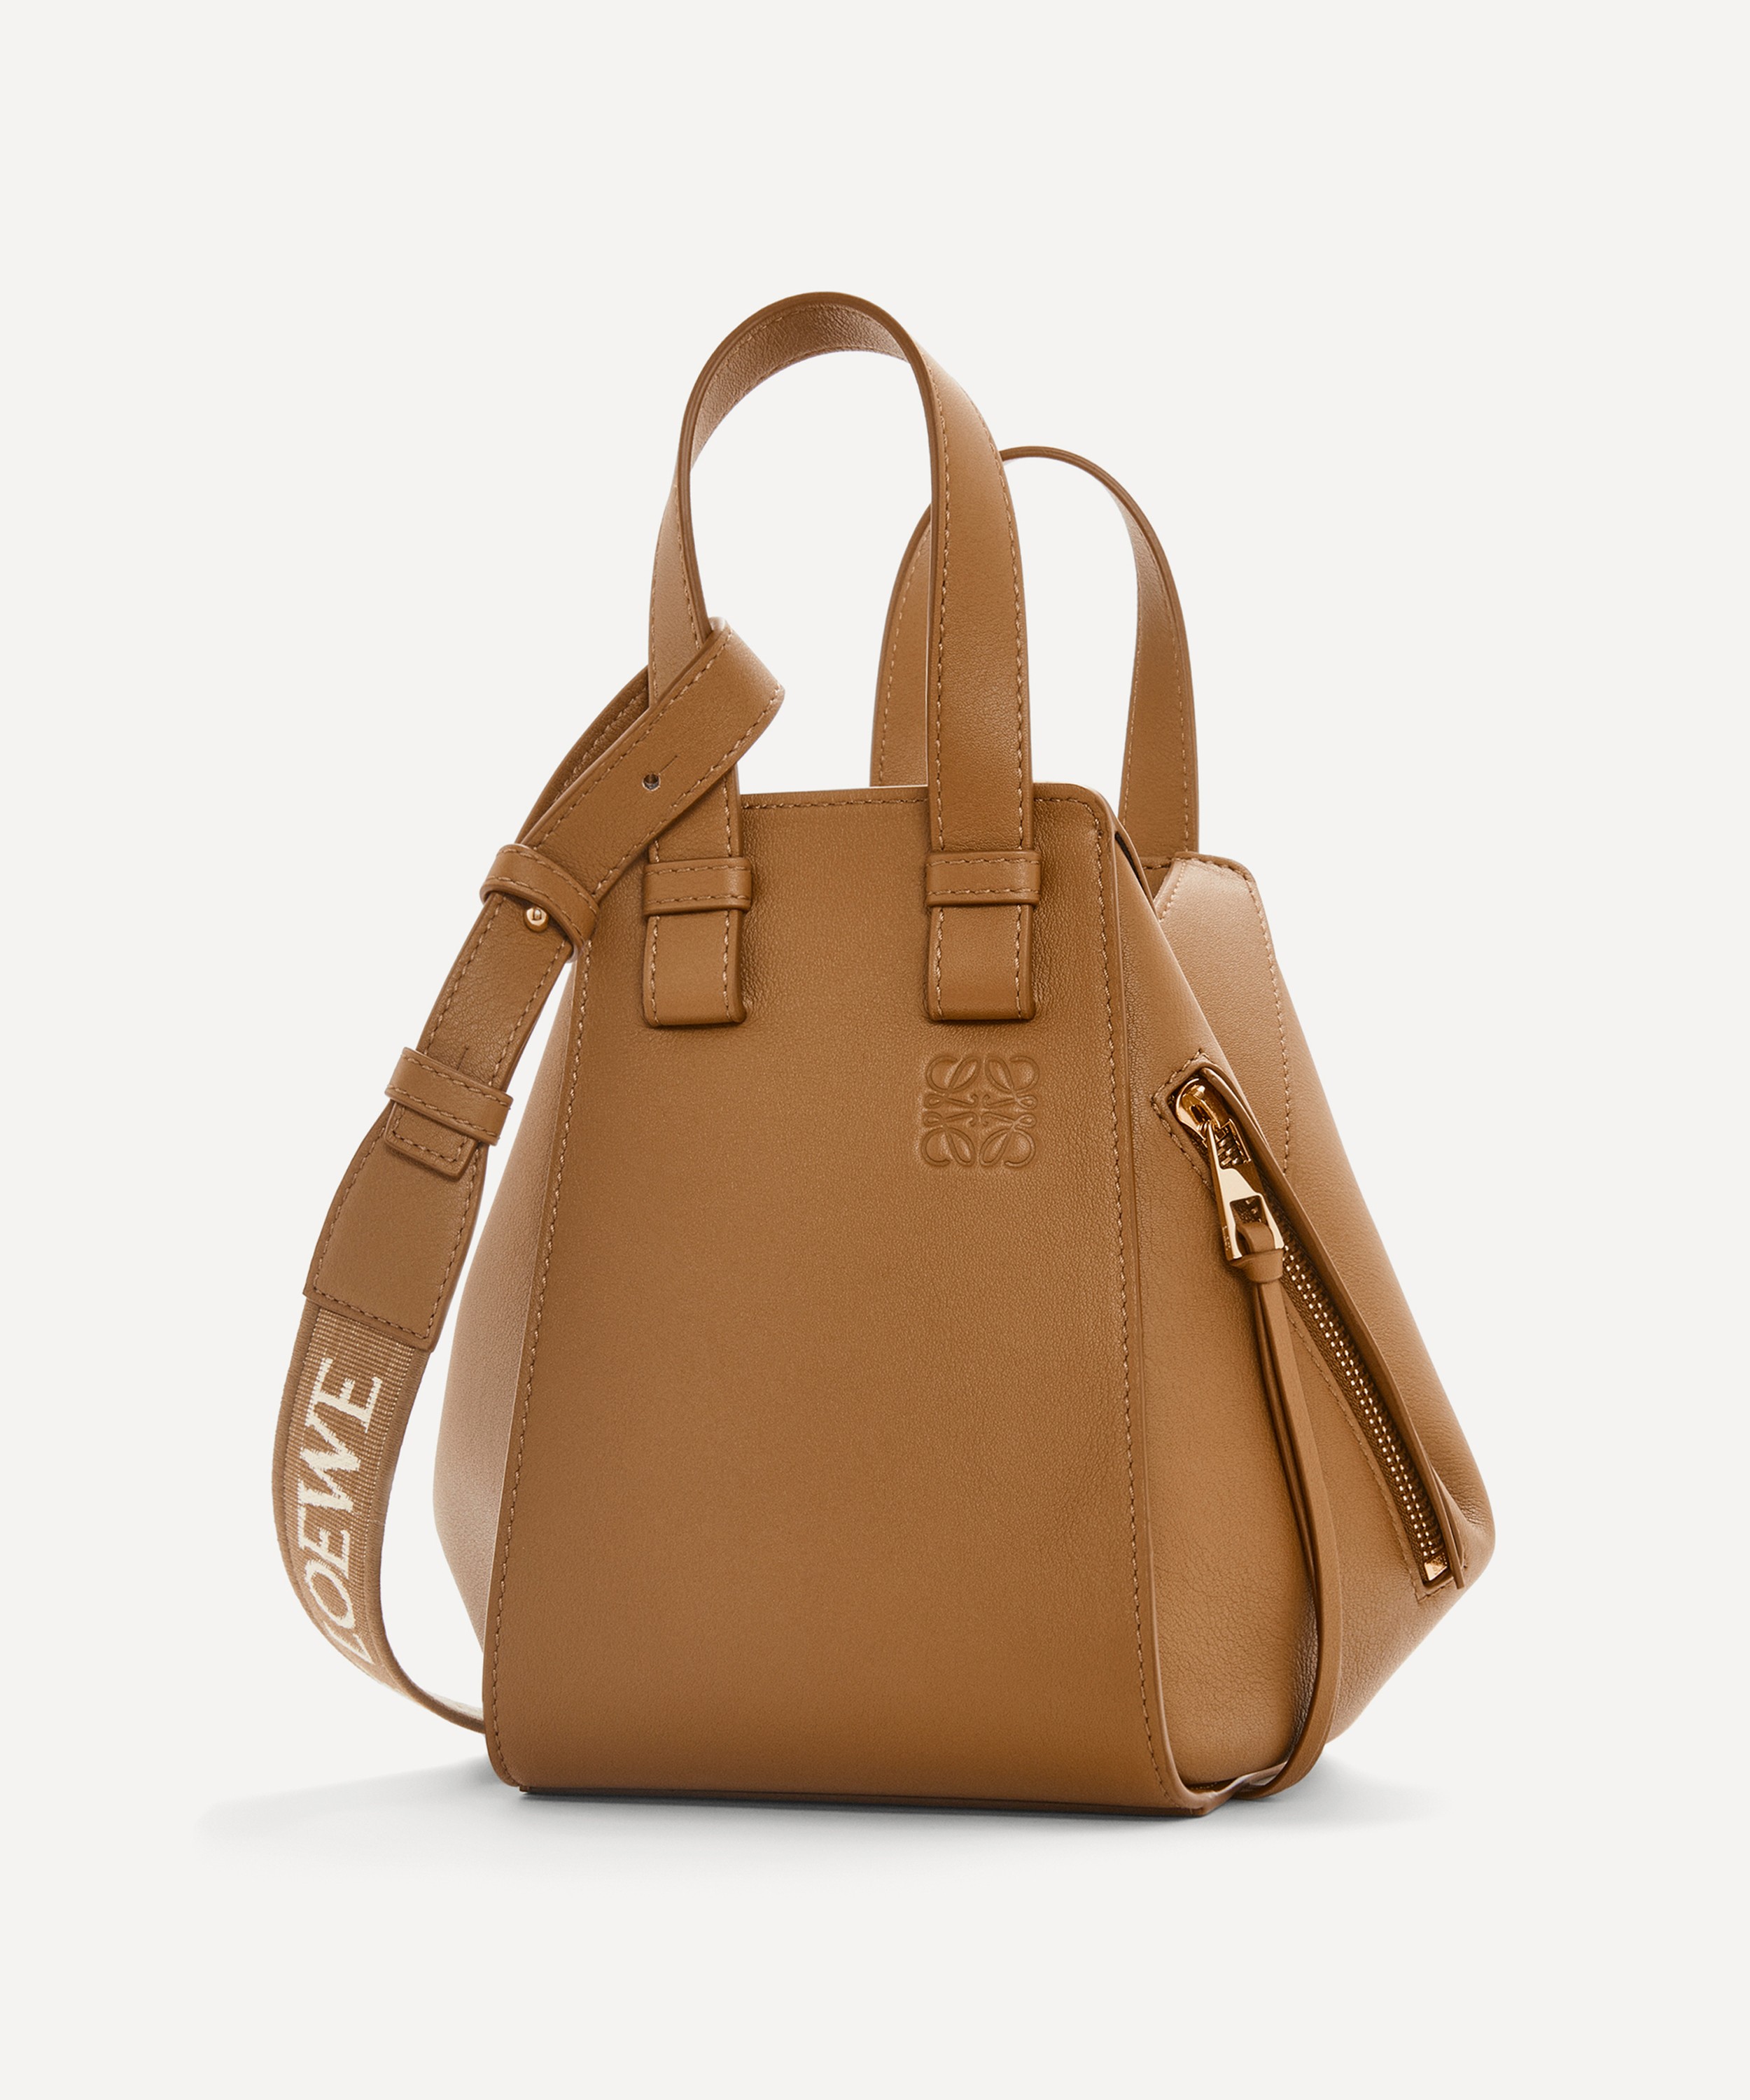 Hammock Compact Leather Tote Bag in Brown - Loewe